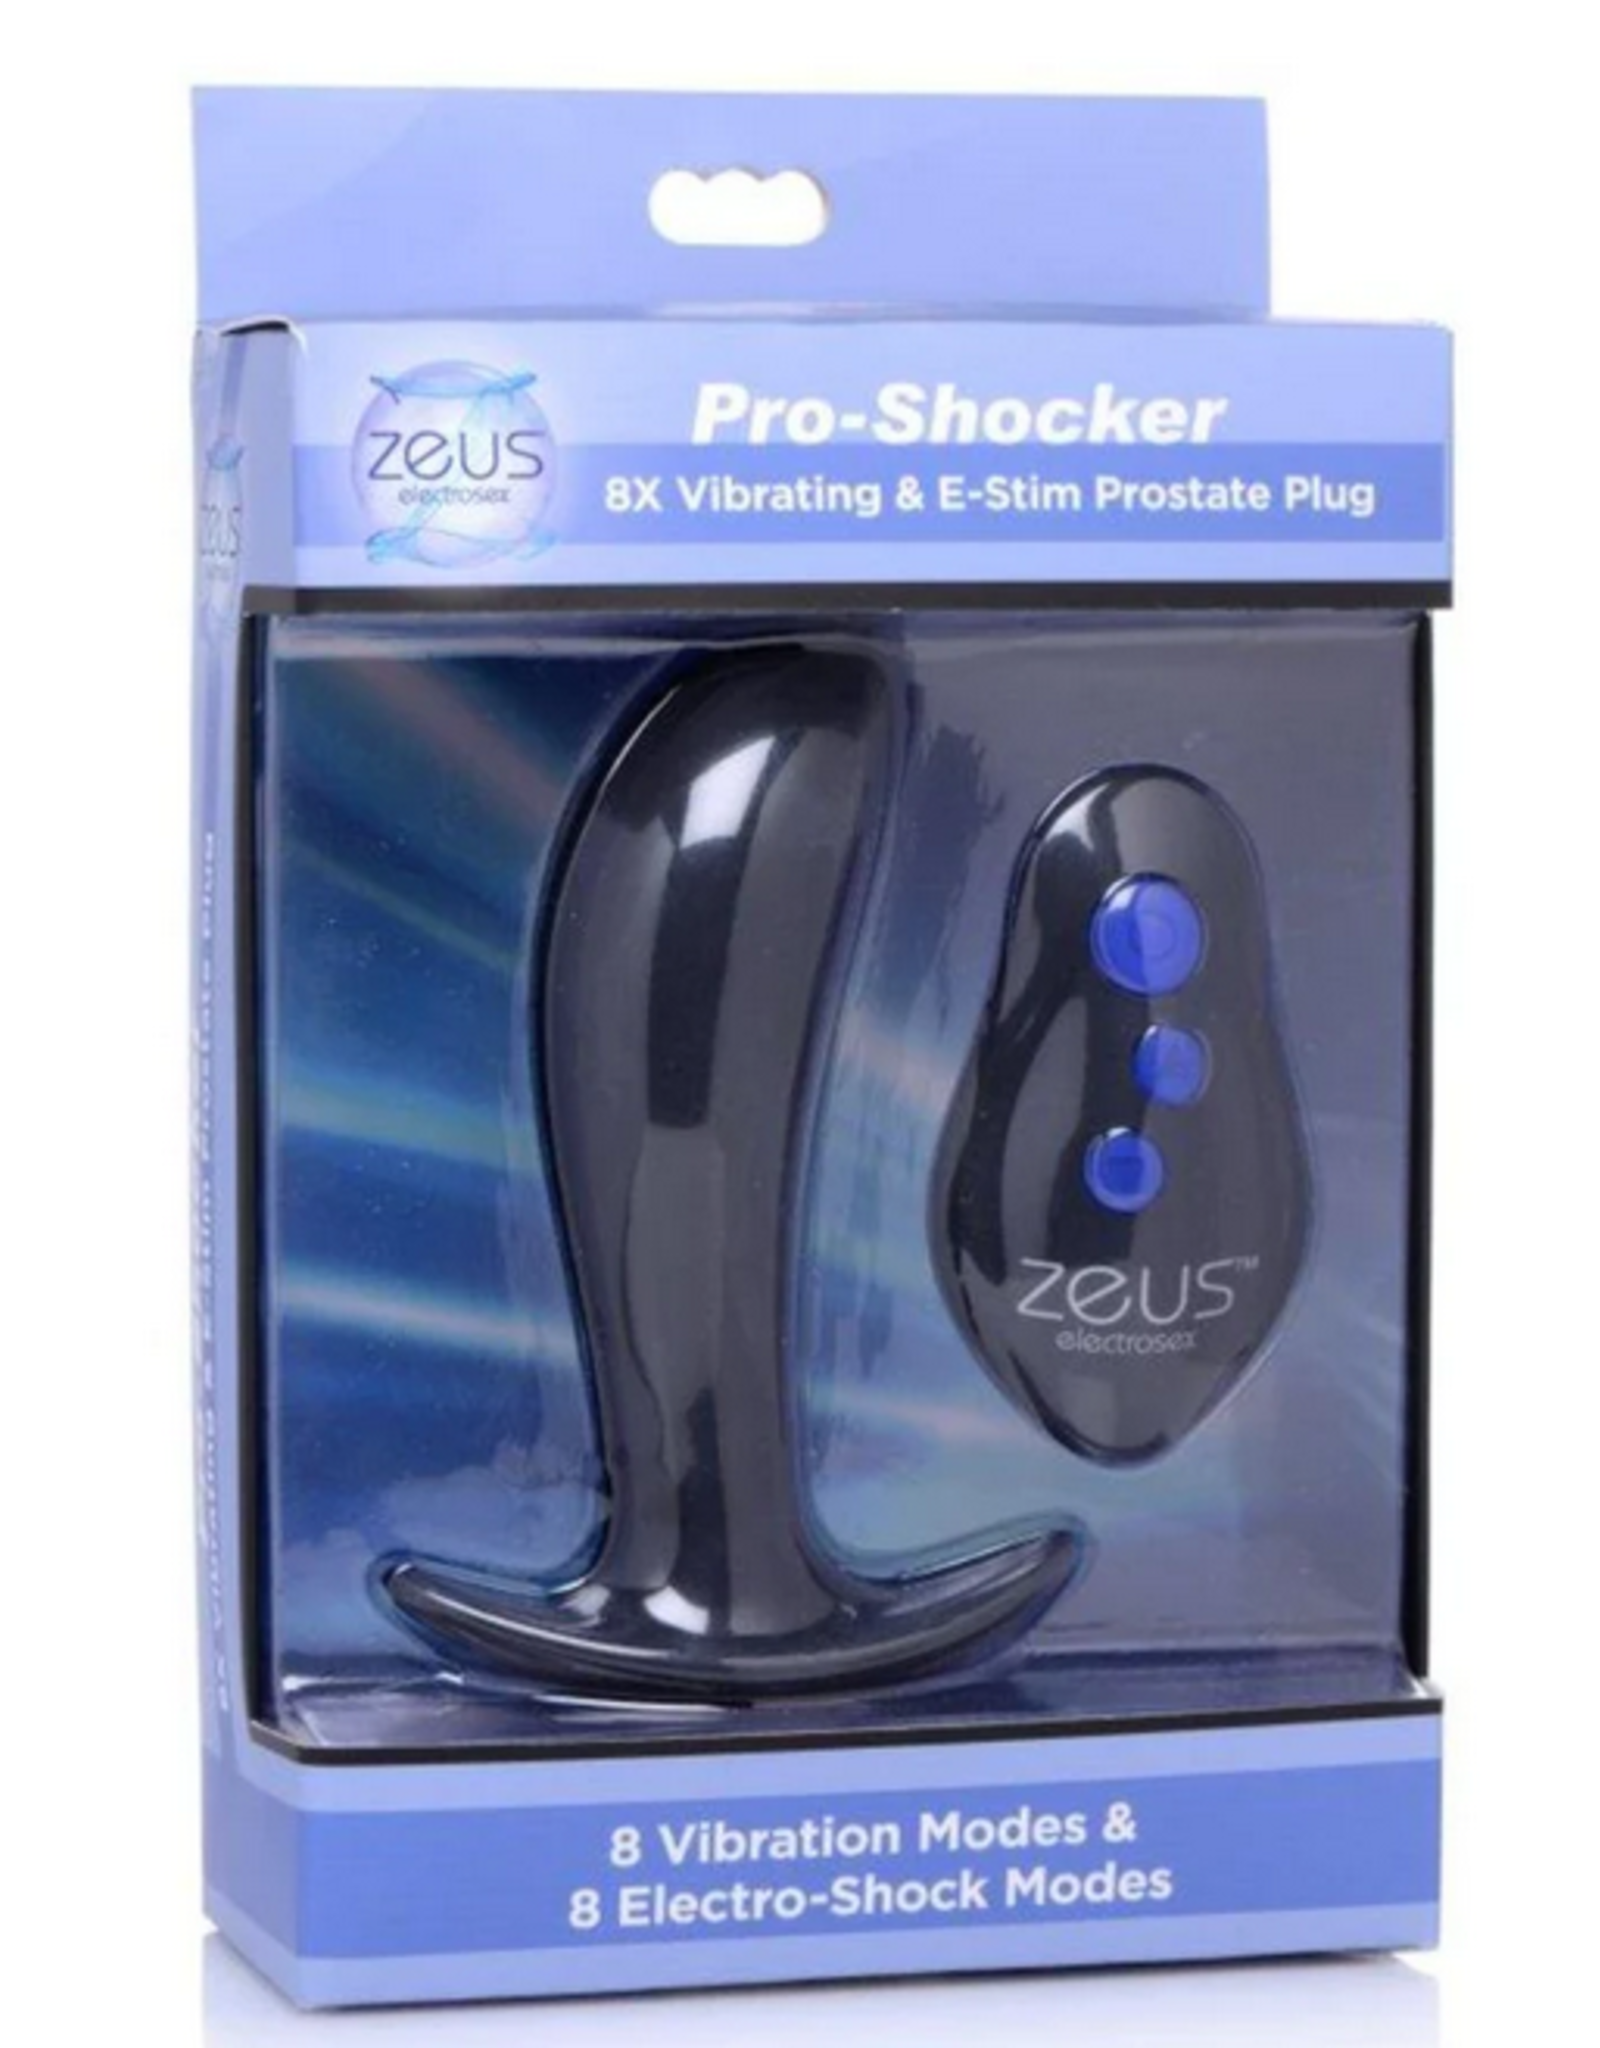 64X Pro Shocker Vibrating & E-Stim Plug